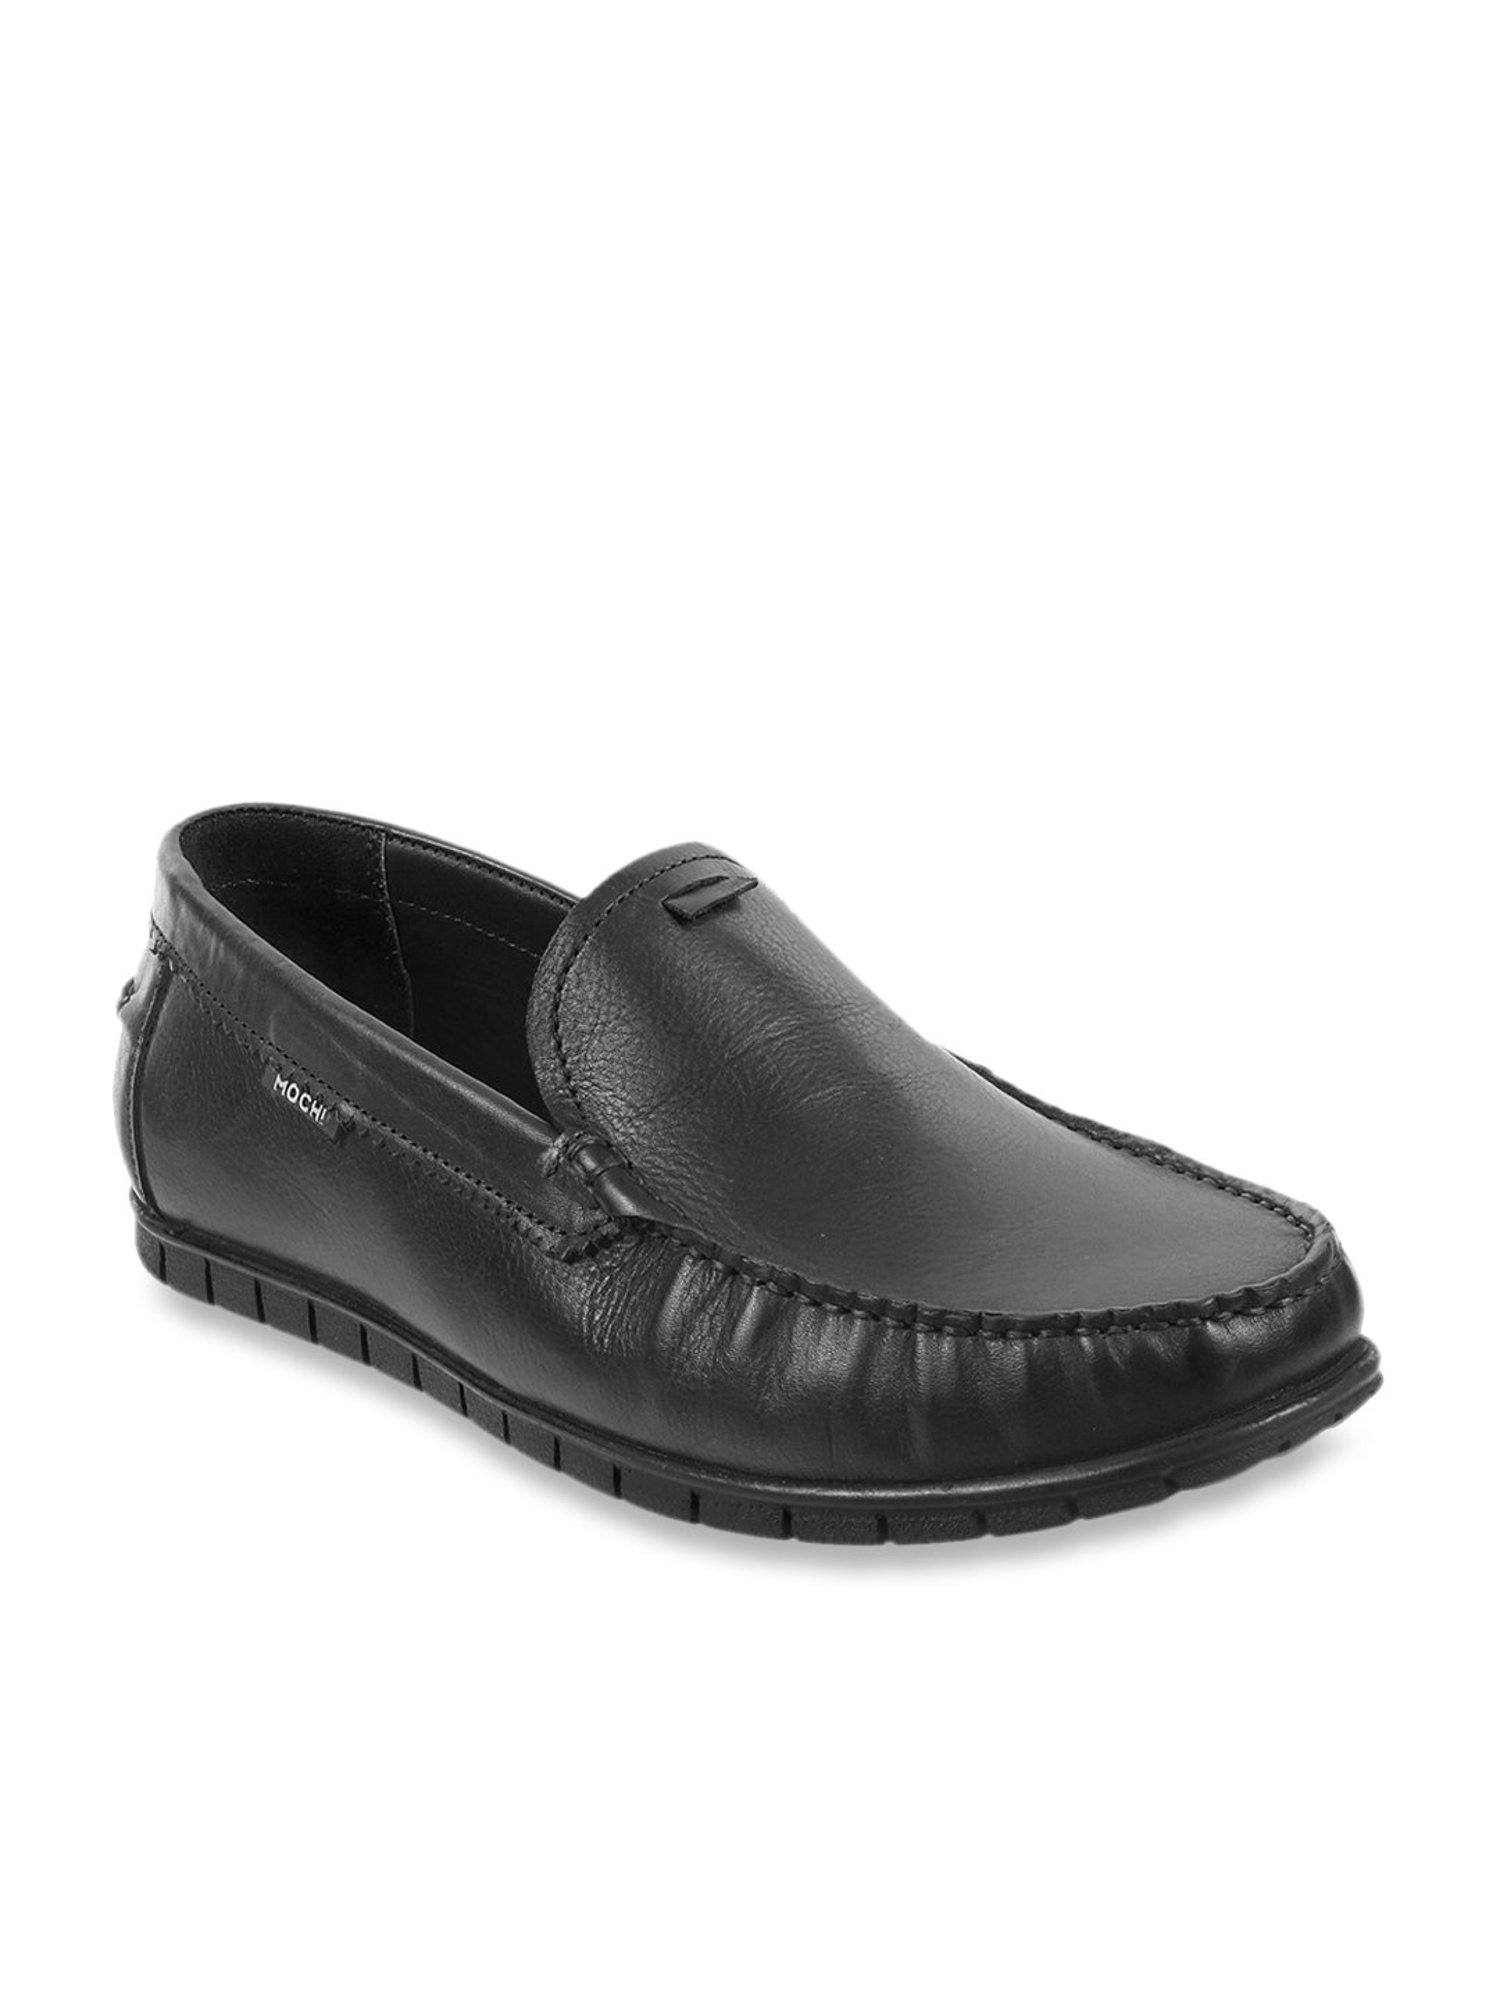 mochi shoes loafer